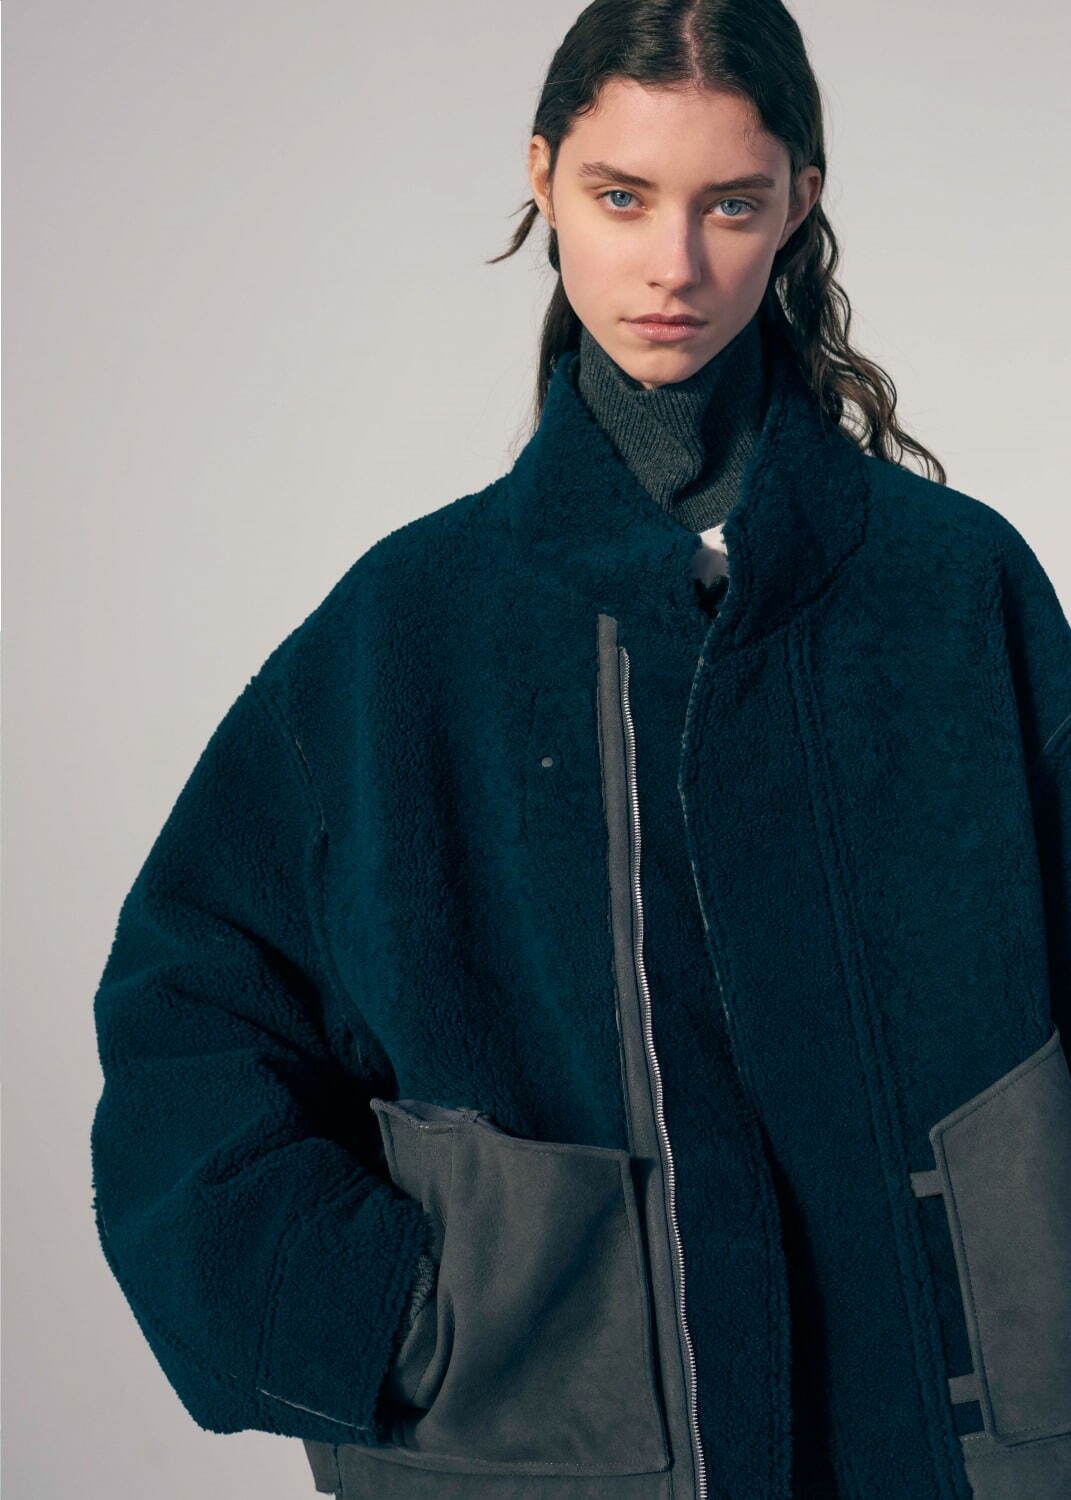 シュタイン 2021-22年秋冬コレクション、静けさに包まれた構築的な服